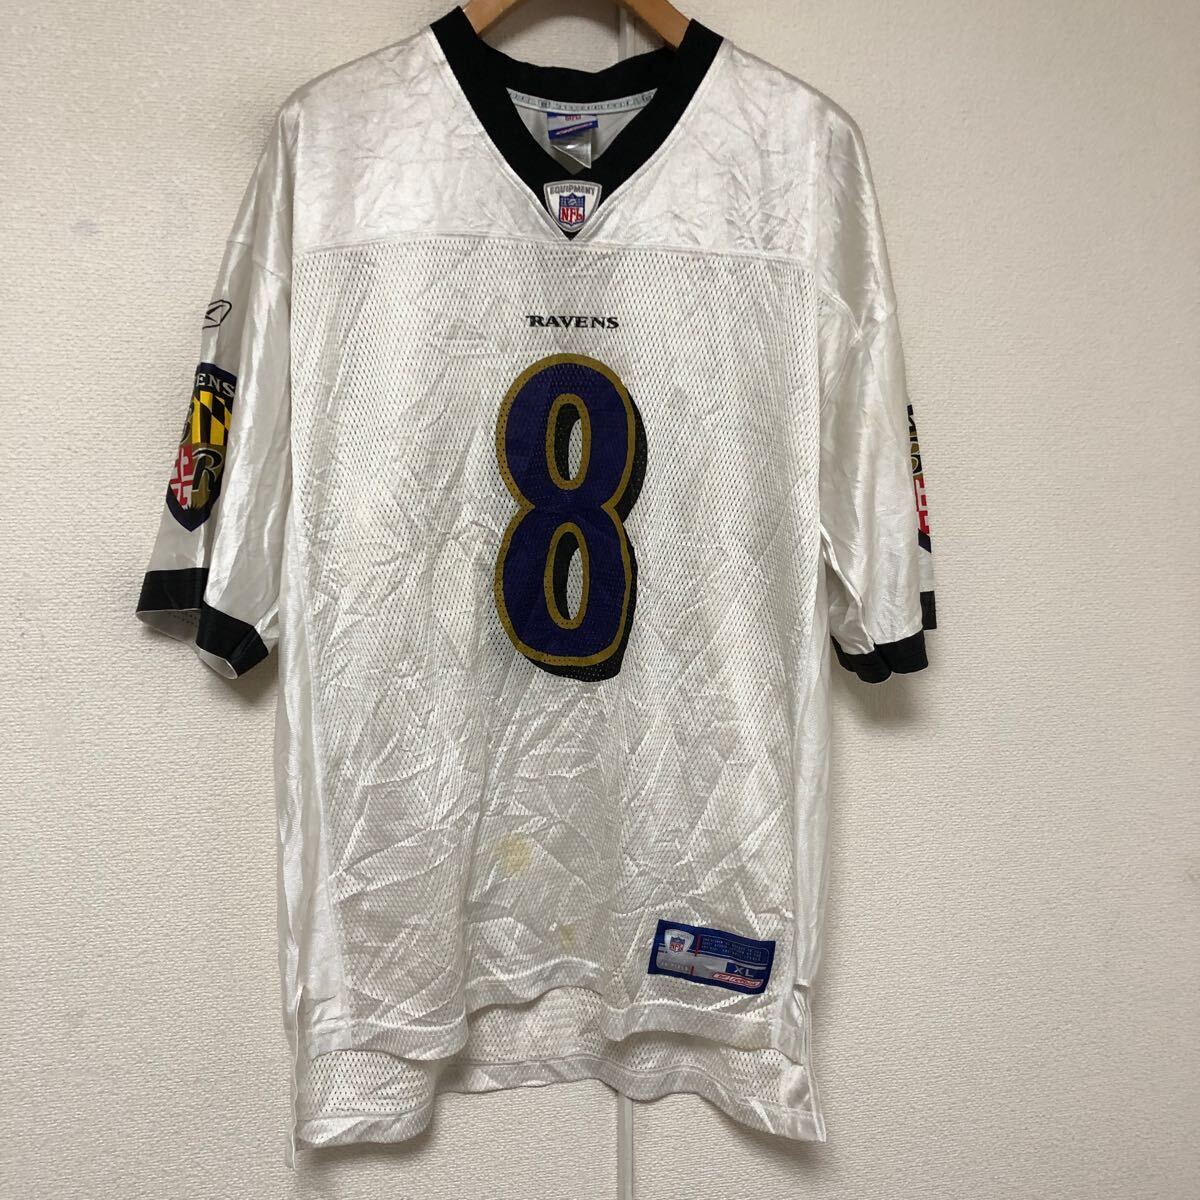 NFL Reebok boruchi moa Ray bnzBaltimore Ravens football jersey XL Kyle Borer -